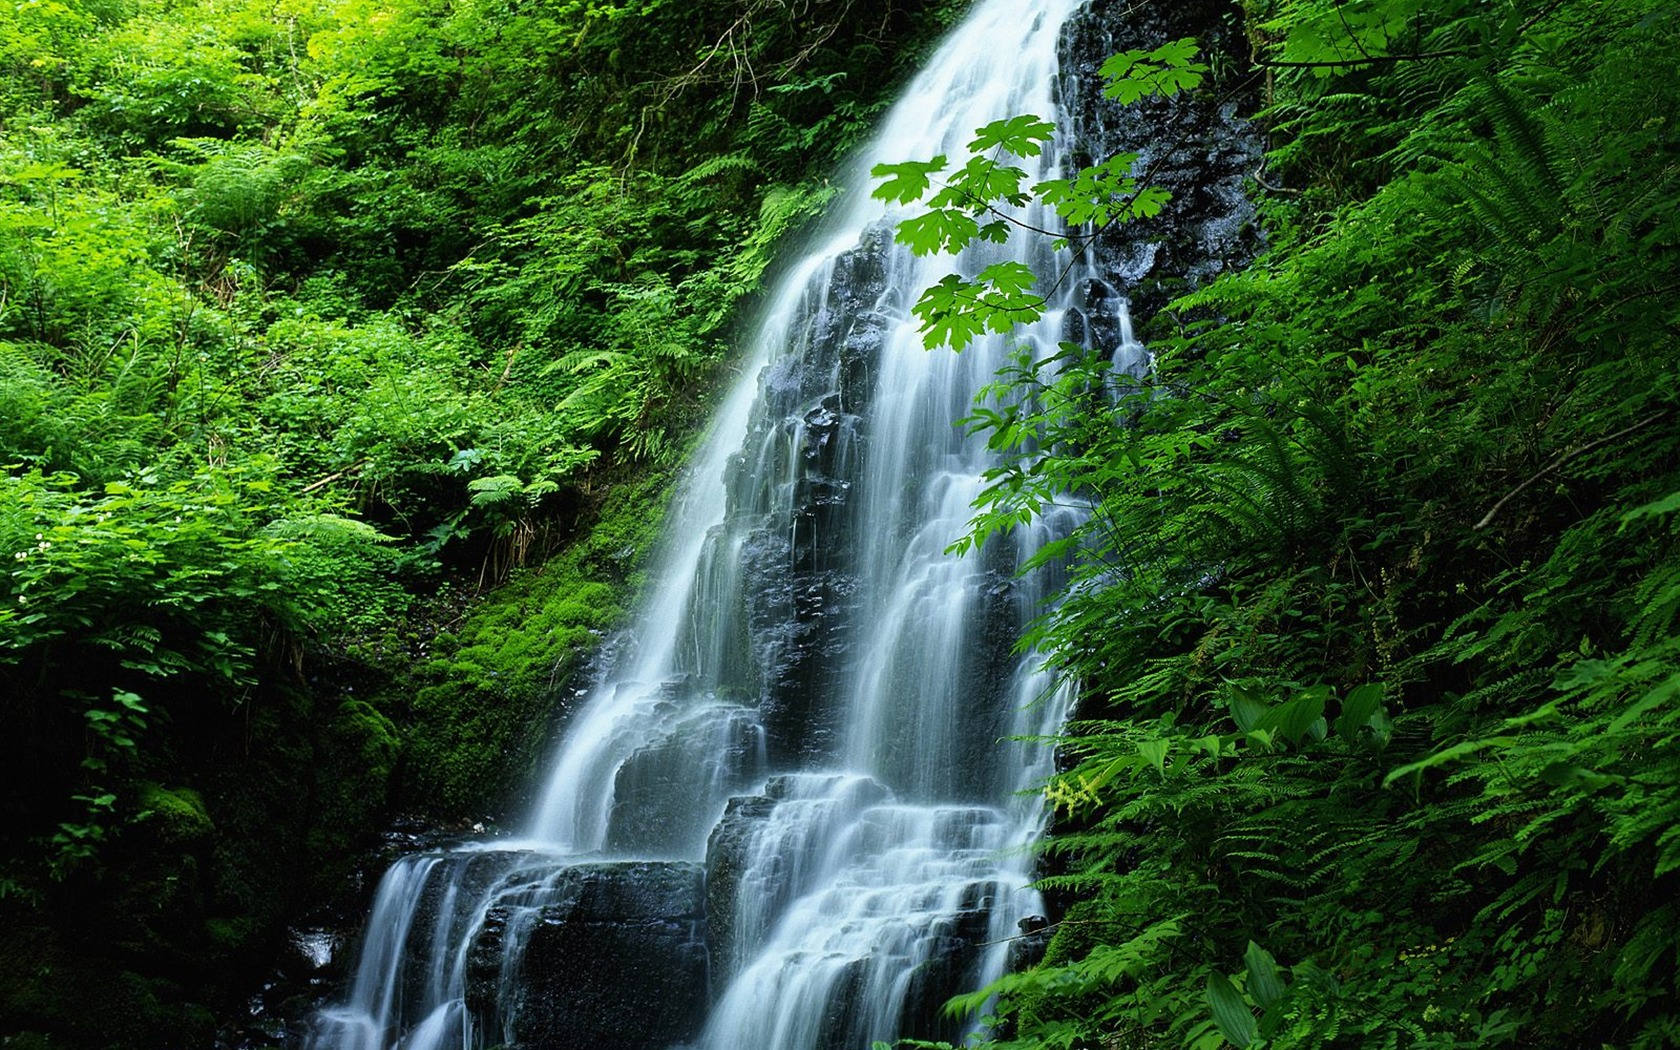 Обои на телефон живой водопад. Природа. Красивые водопады. Живая природа водопады. Живые водопады.